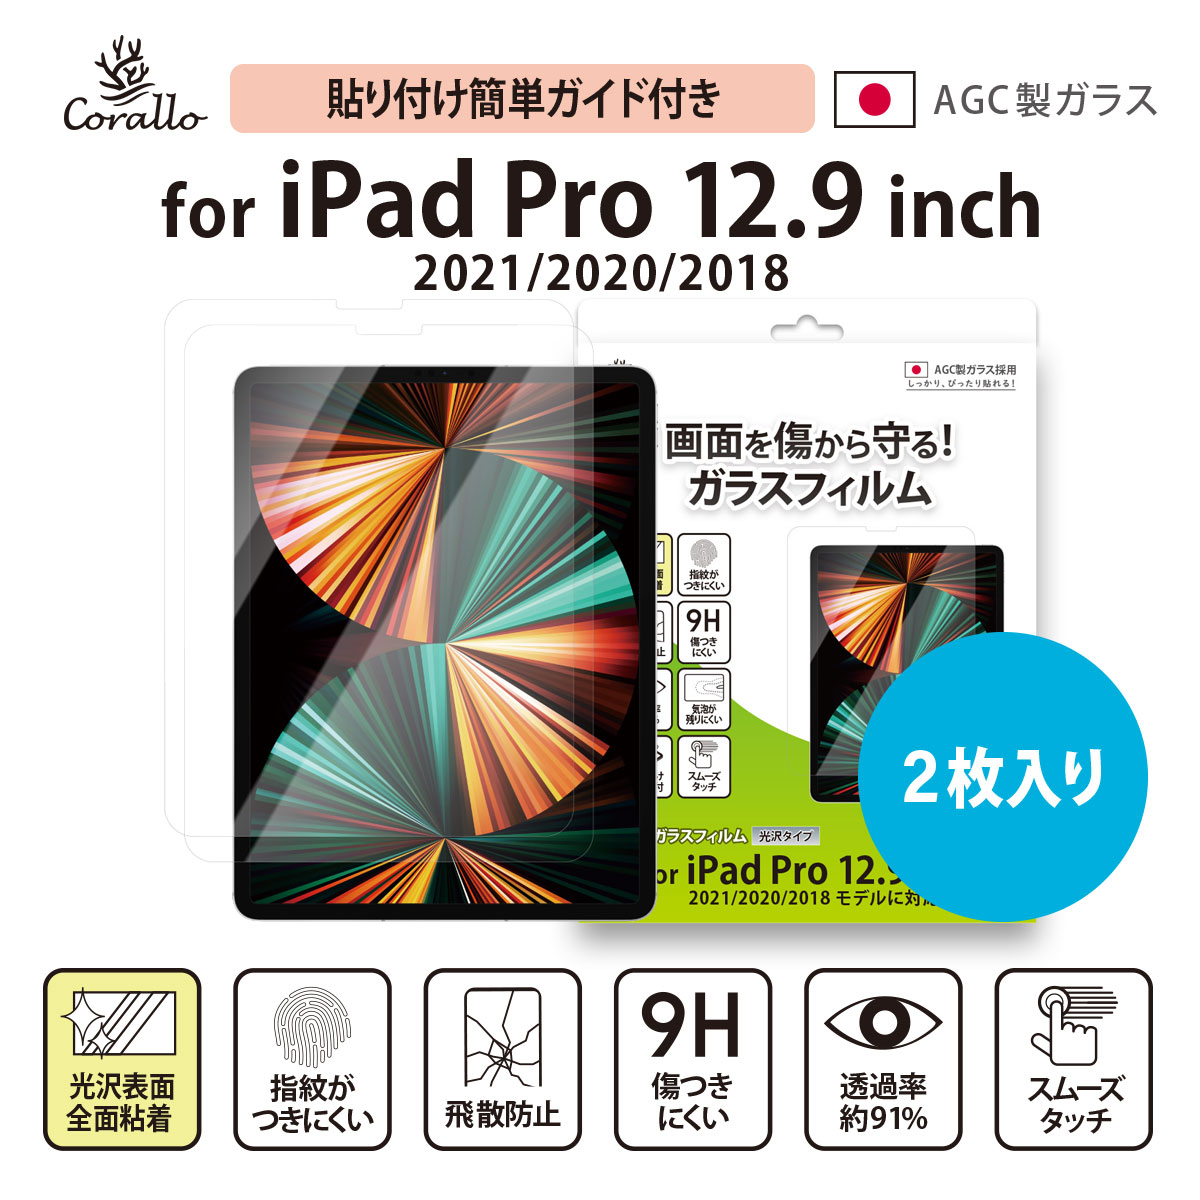 iPad Pro 12.9 2022 2021 ガラスフィルム 2枚 セット 硬度 9H ガラス 透明 保護 ガラスフィルム 日本製 AGC 硝子 気泡 指紋防止 液晶 保護フィルム 画面保護フィルム Apple iPadPro12.9 第6世代 第5世代 アイパッドプロ 12.9インチ 2022年 対応 Corallo NU GLASS